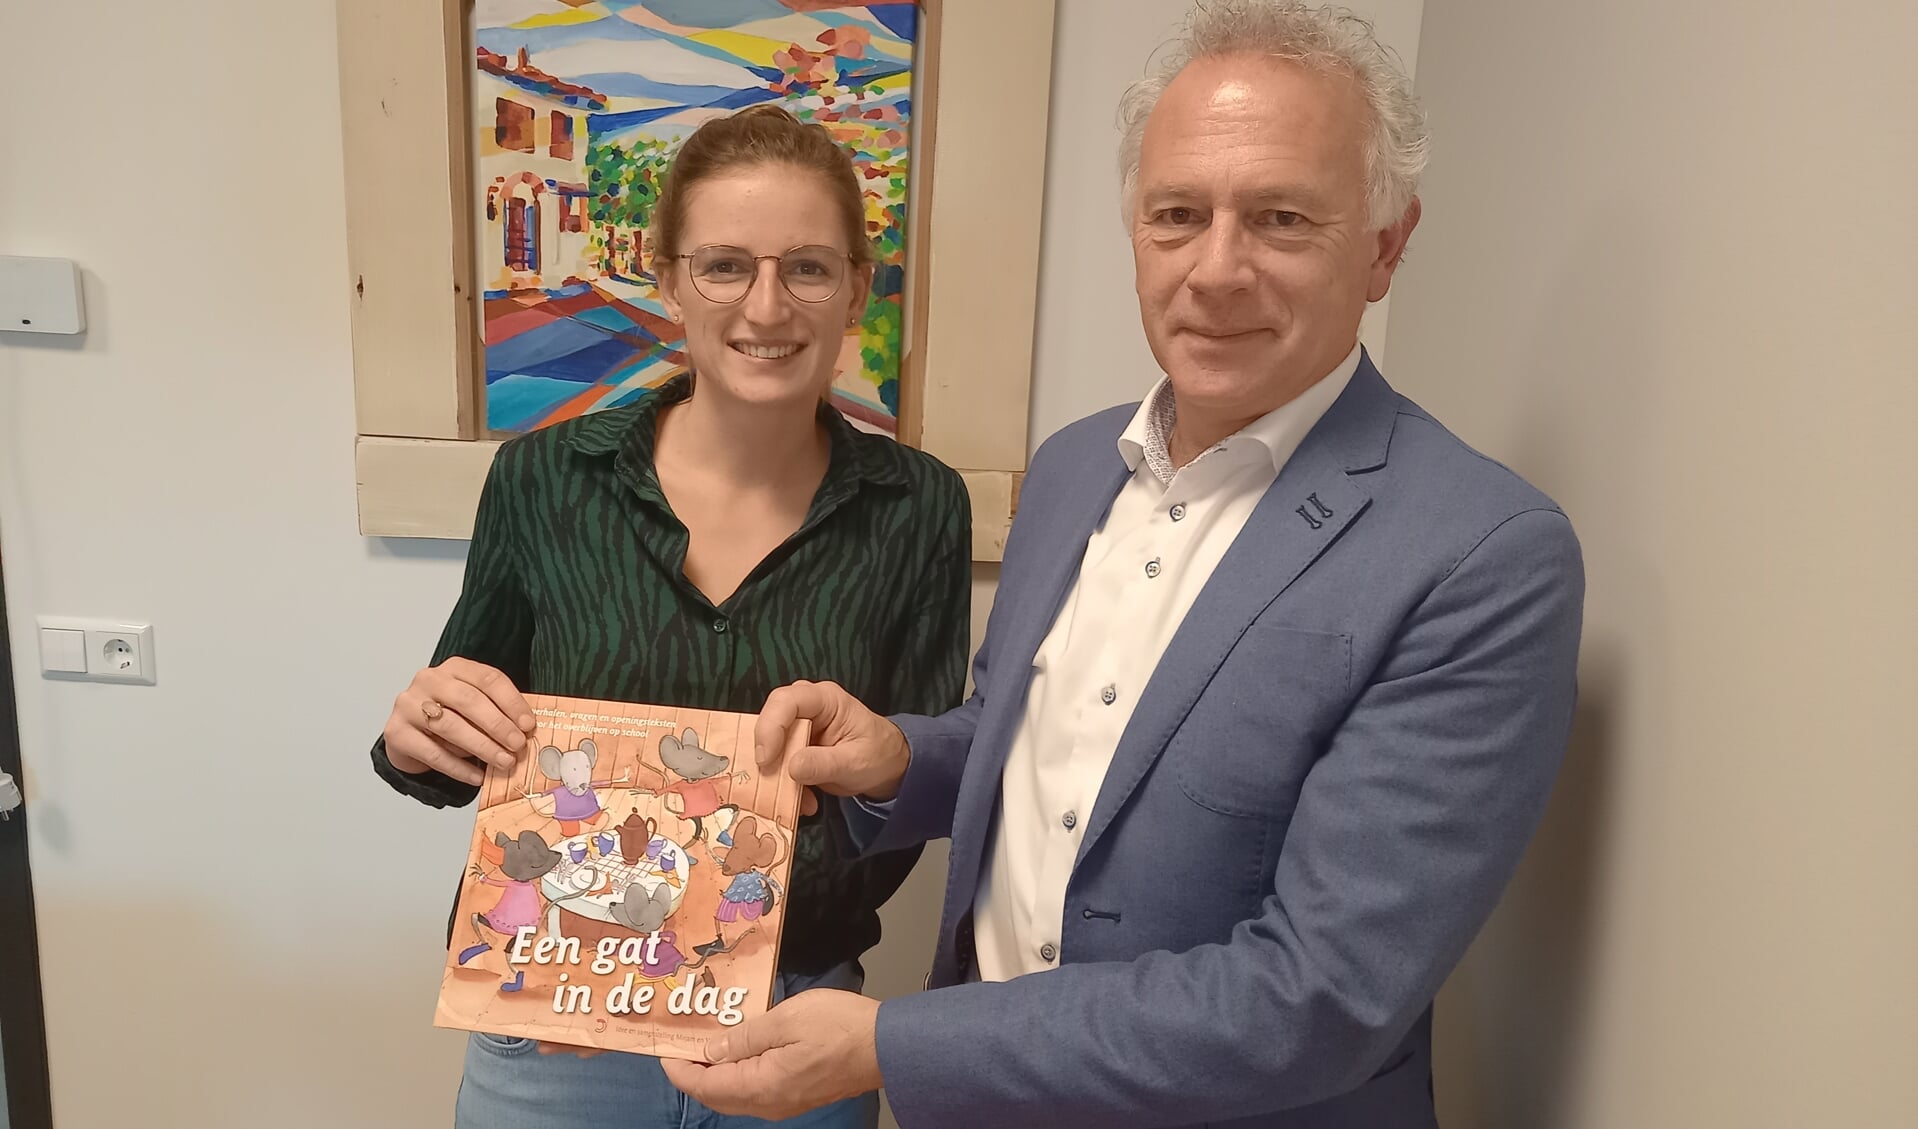 Leerkracht Mirjam de Vos en haar vader Willem, rector van het CLV, met hun gezamenlijke productie gebundeld in 'Een gat in de dag'. 